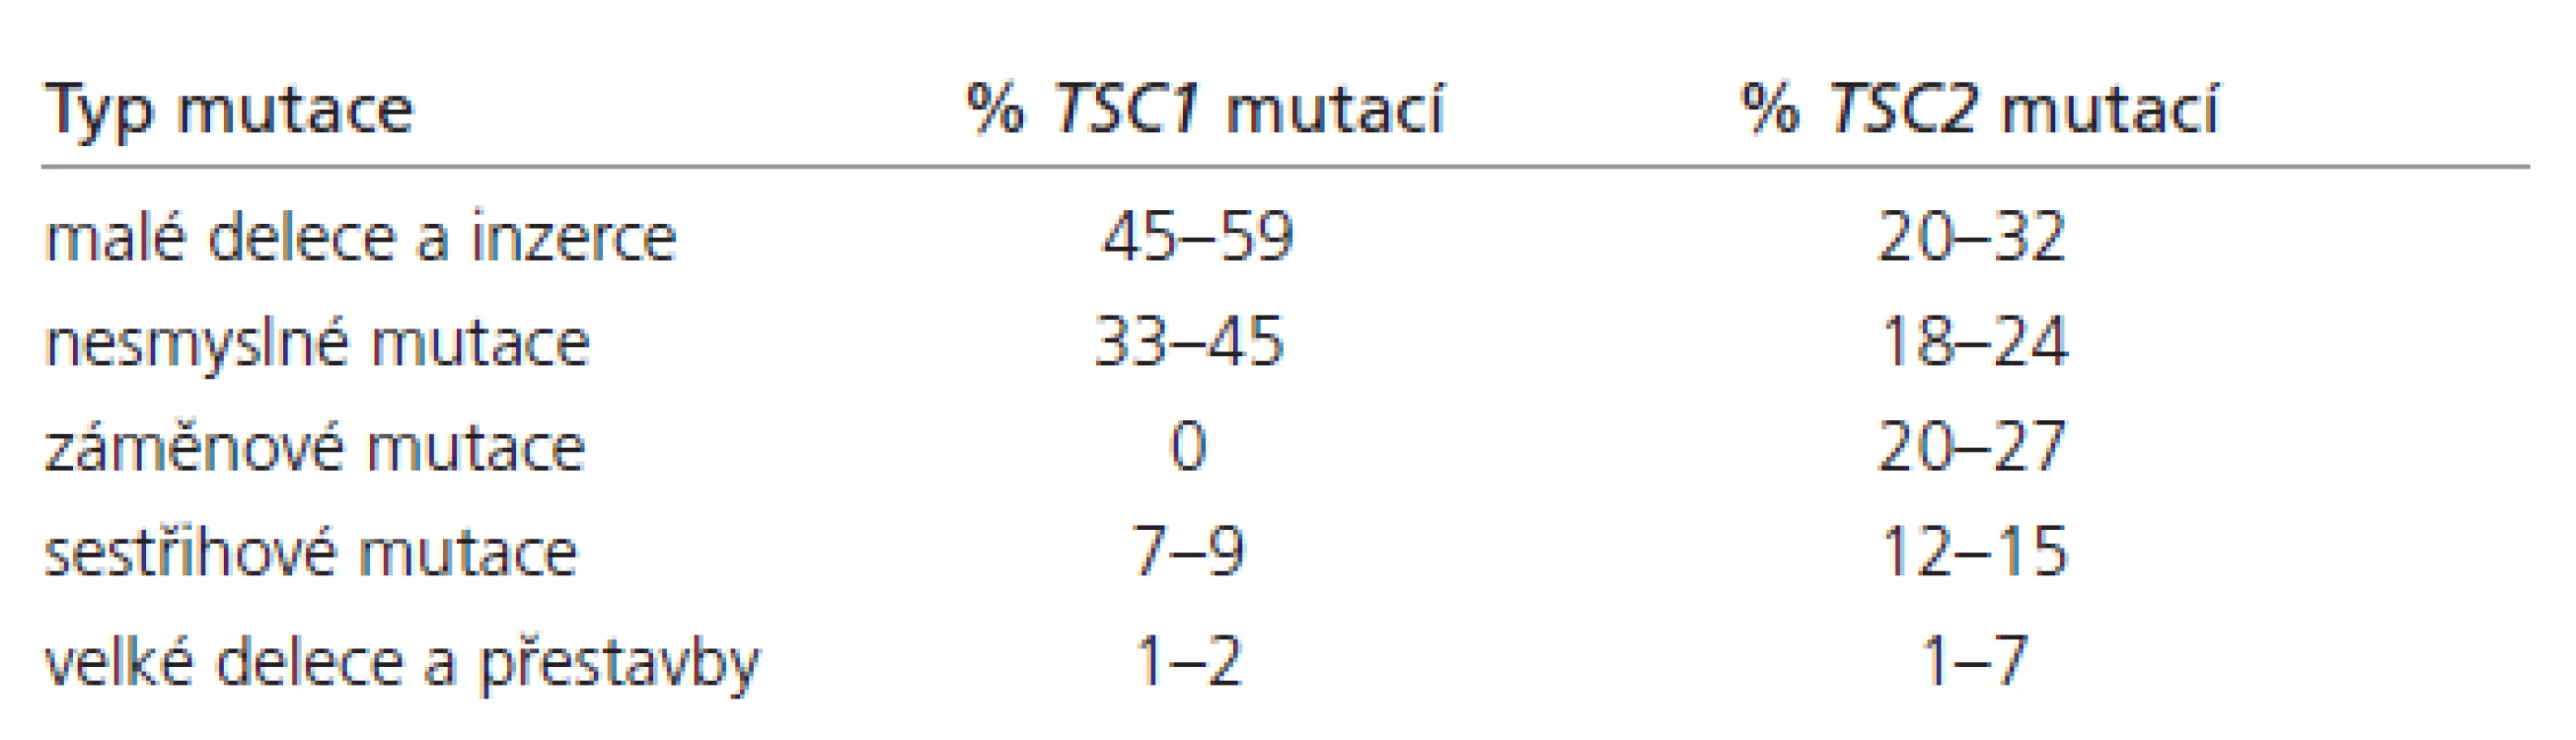 Spektrum mutací odhalených v genech TSC1 a TSC2 [6– 13].
Mutace pozorované u TSC1 (n = 174) a u TSC2 (n = 1 038)